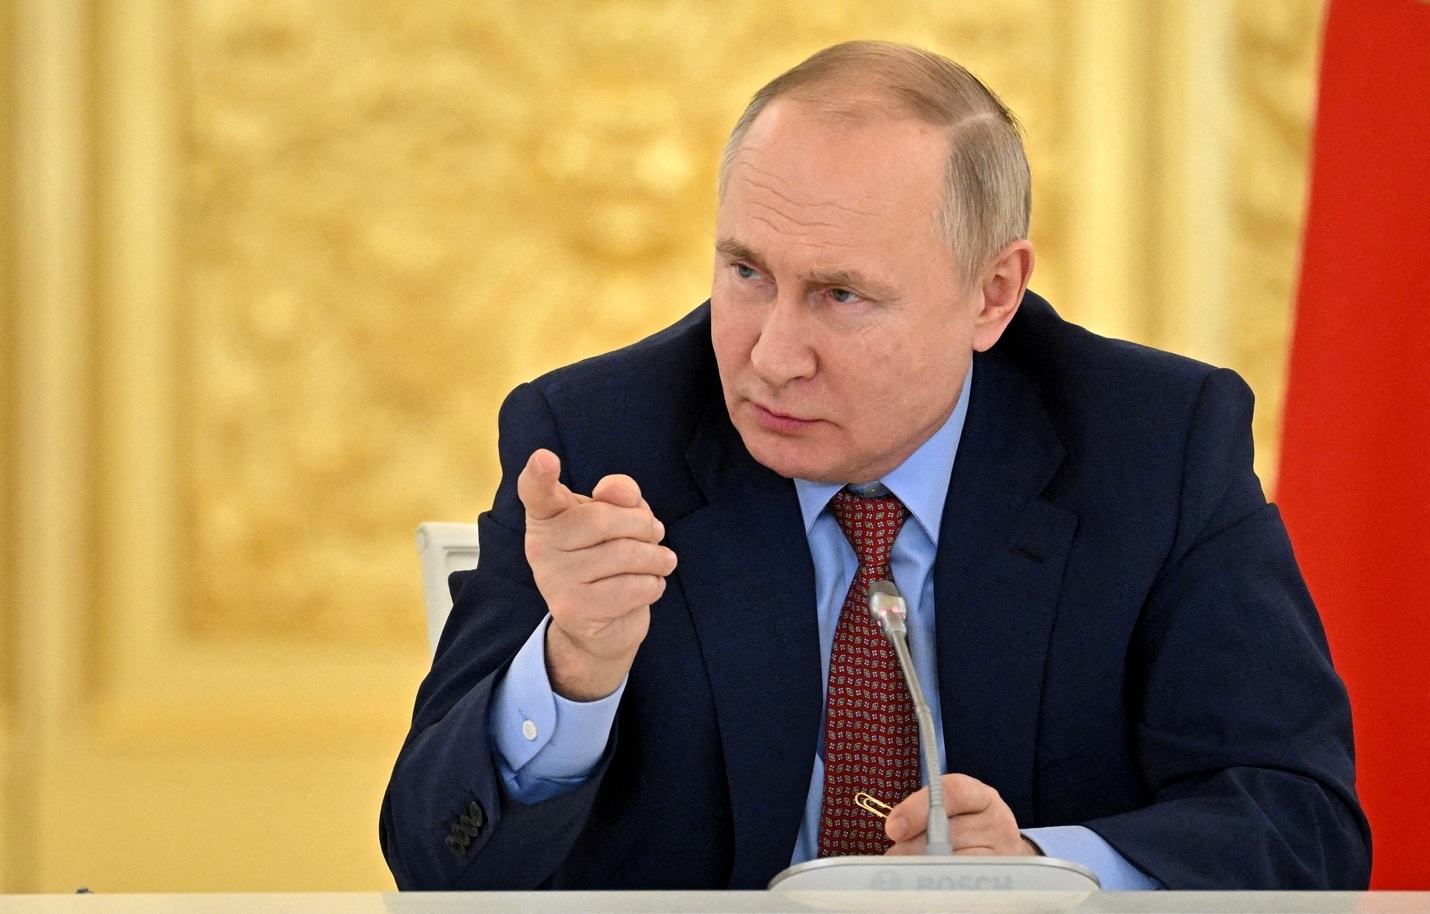 Tổng thống Nga Putin mỉa mai Thủ tướng Anh Johnson - 1